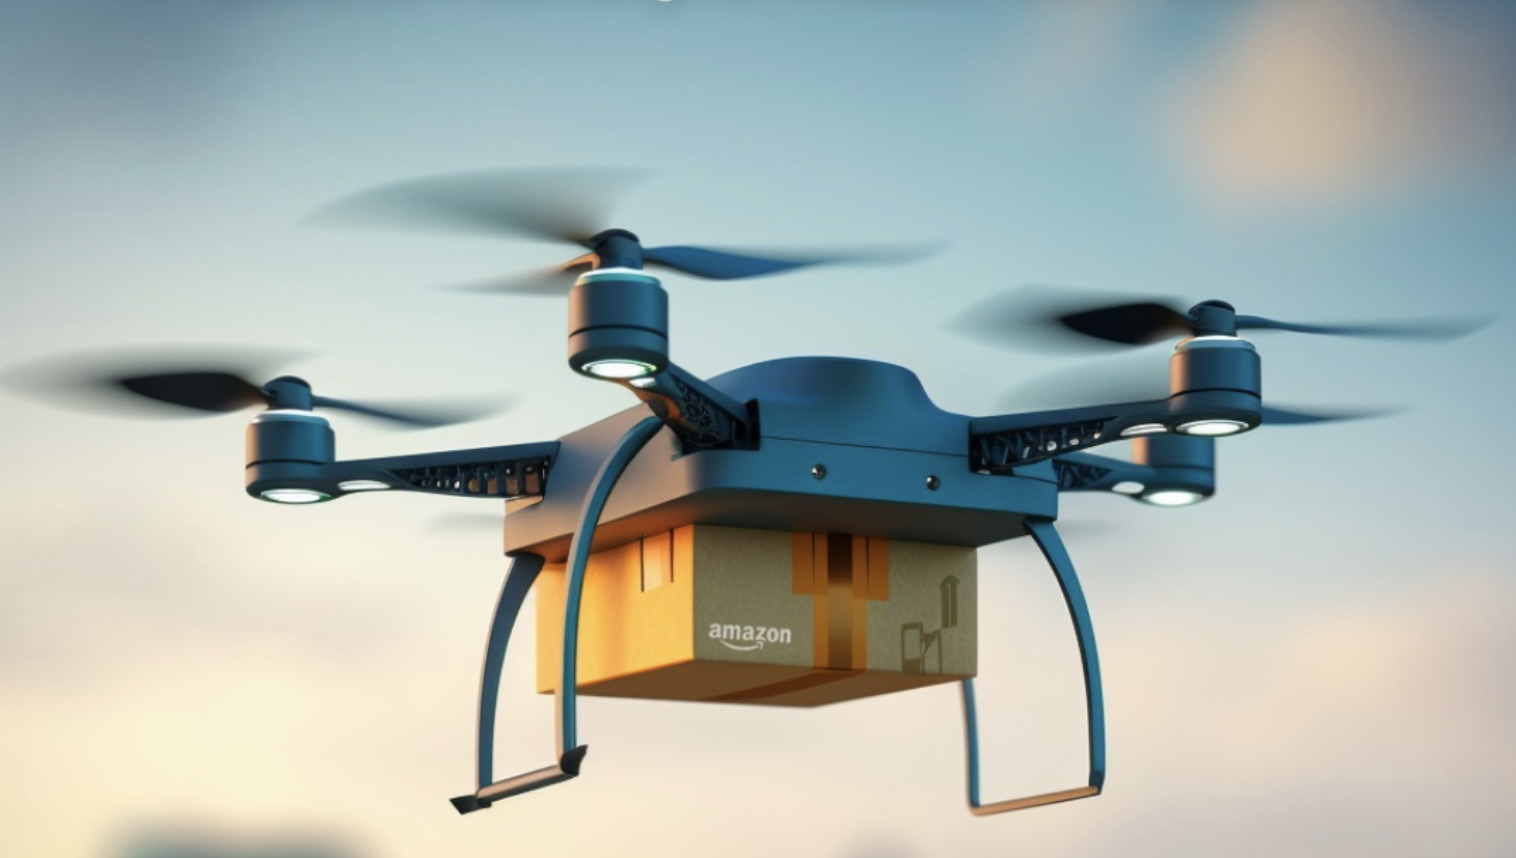 Amazon consegna a domicilio con i droni in Italia con Prime Air e Enac: mobilità aerea